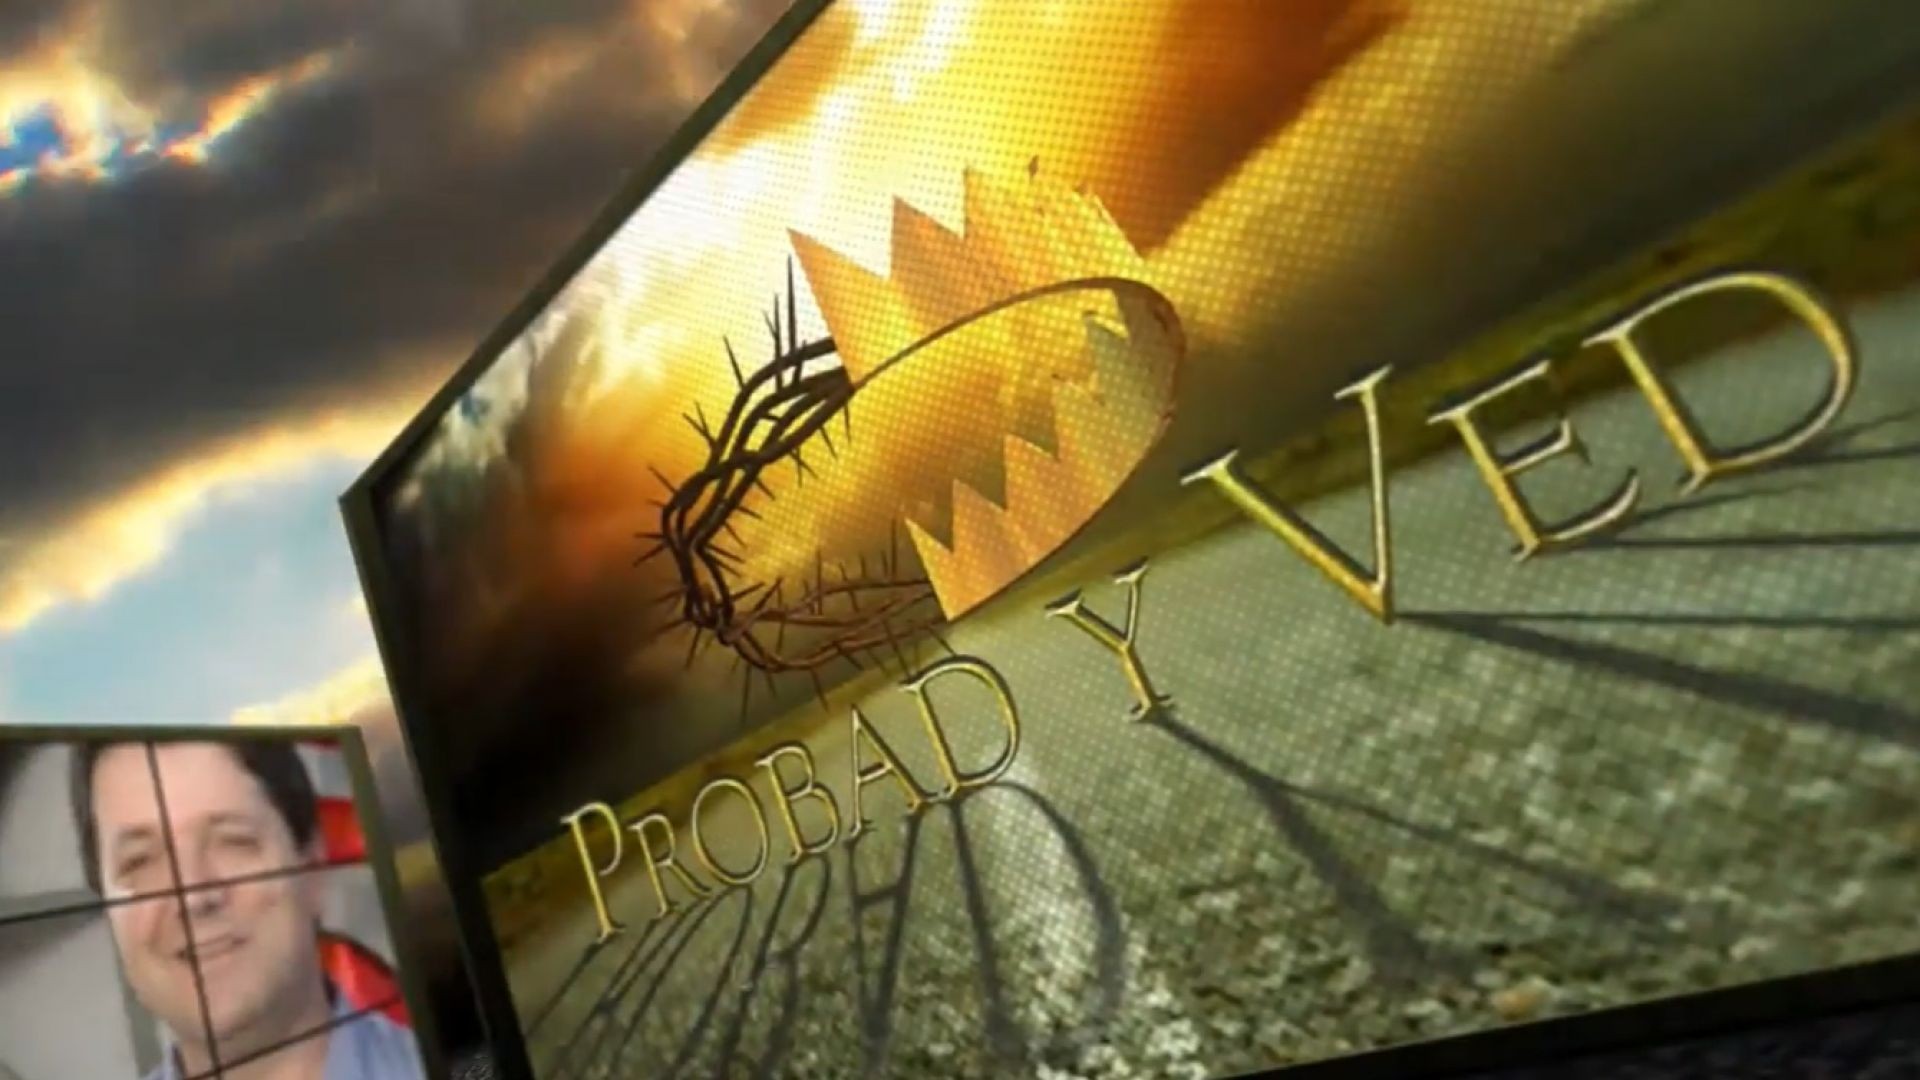 Probad y Ved 2012 - Comunion con Dios